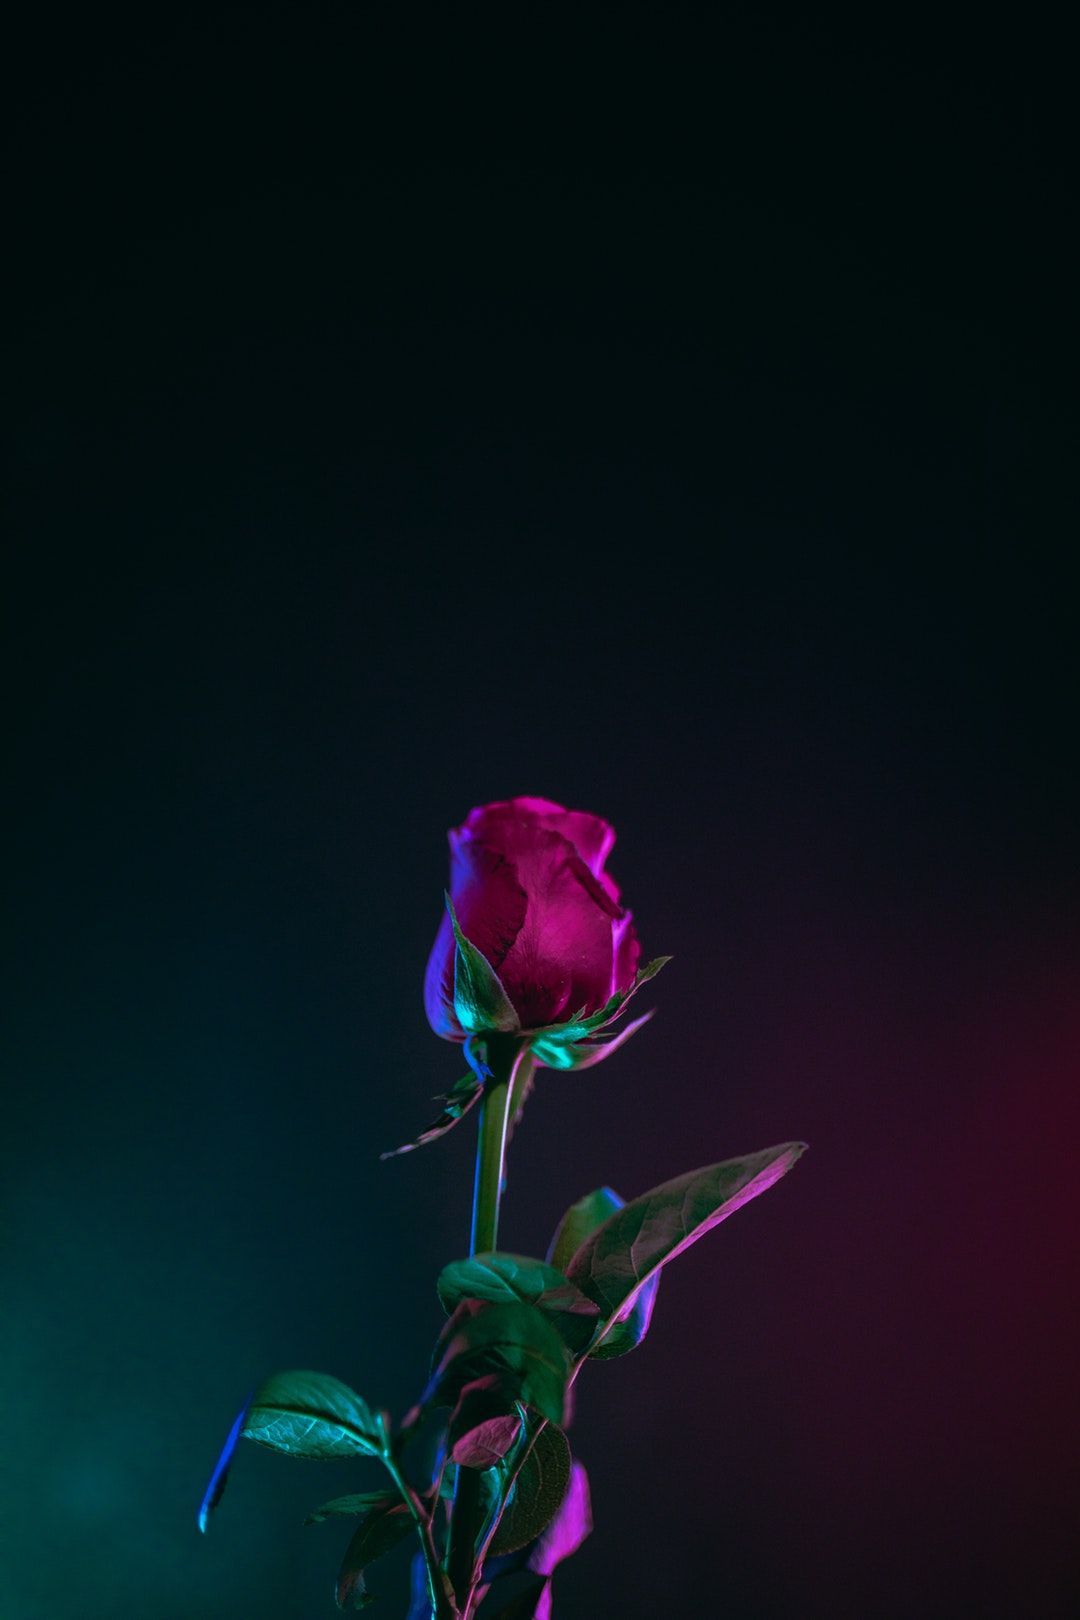 Chào mừng đến với thế giới hoa hồng tím đầy mơ mộng và tinh tế. Bức ảnh này sẽ mang đến cho bạn sự thư thái và cảm giác tốt nhất bằng vẻ đẹp tuyệt đẹp và màu sắc ấm áp của hoa hồng tím.